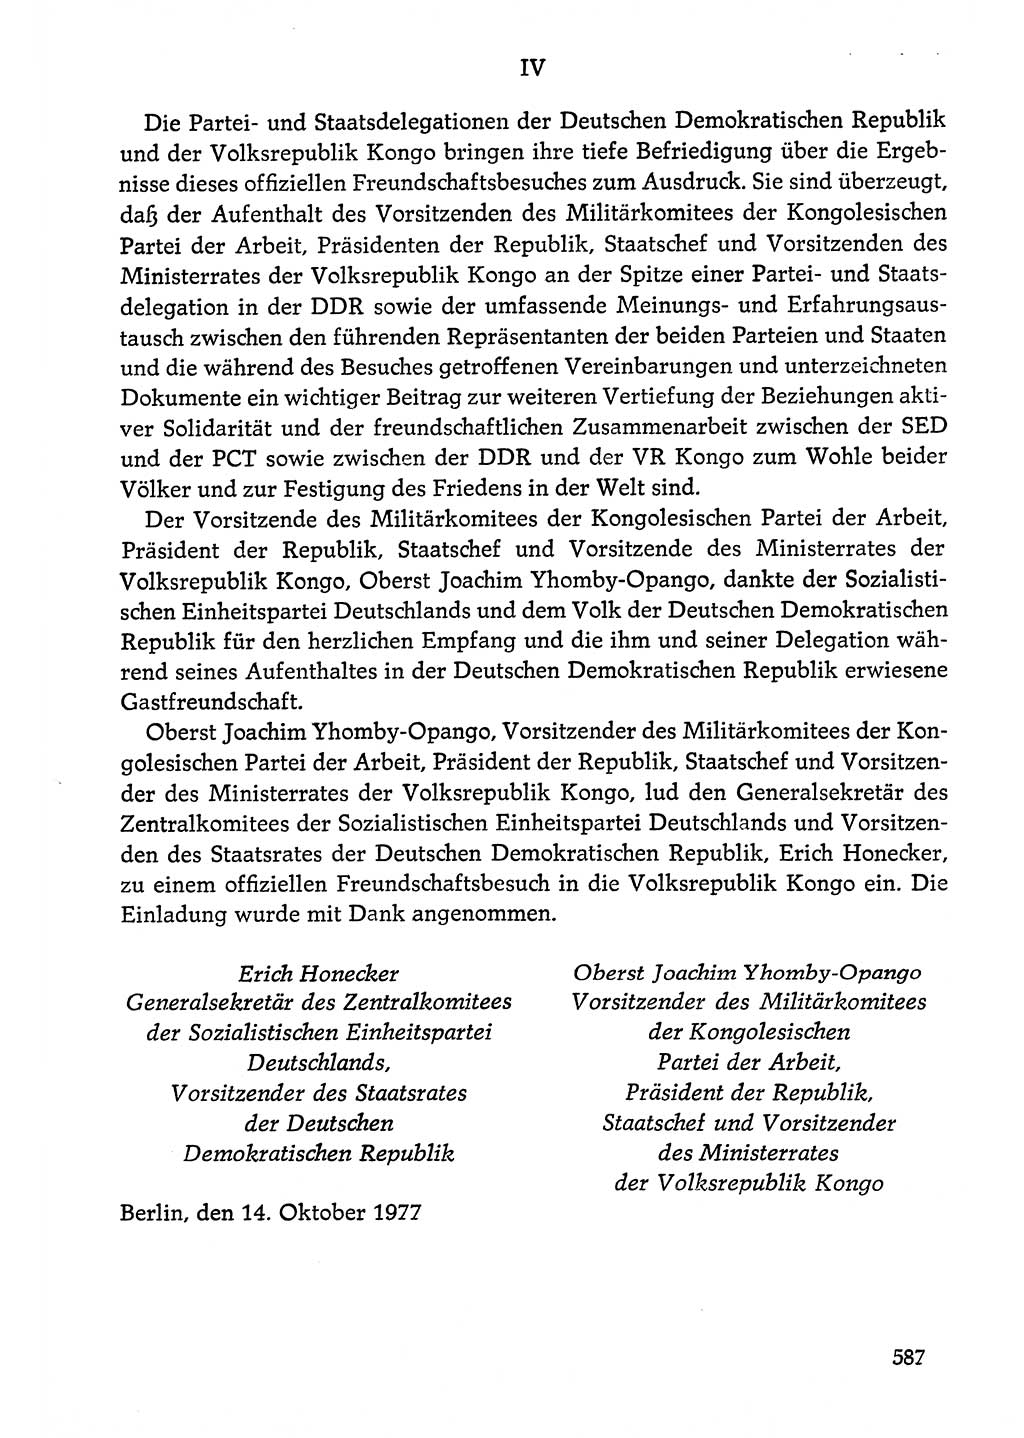 Dokumente der Sozialistischen Einheitspartei Deutschlands (SED) [Deutsche Demokratische Republik (DDR)] 1976-1977, Seite 587 (Dok. SED DDR 1976-1977, S. 587)